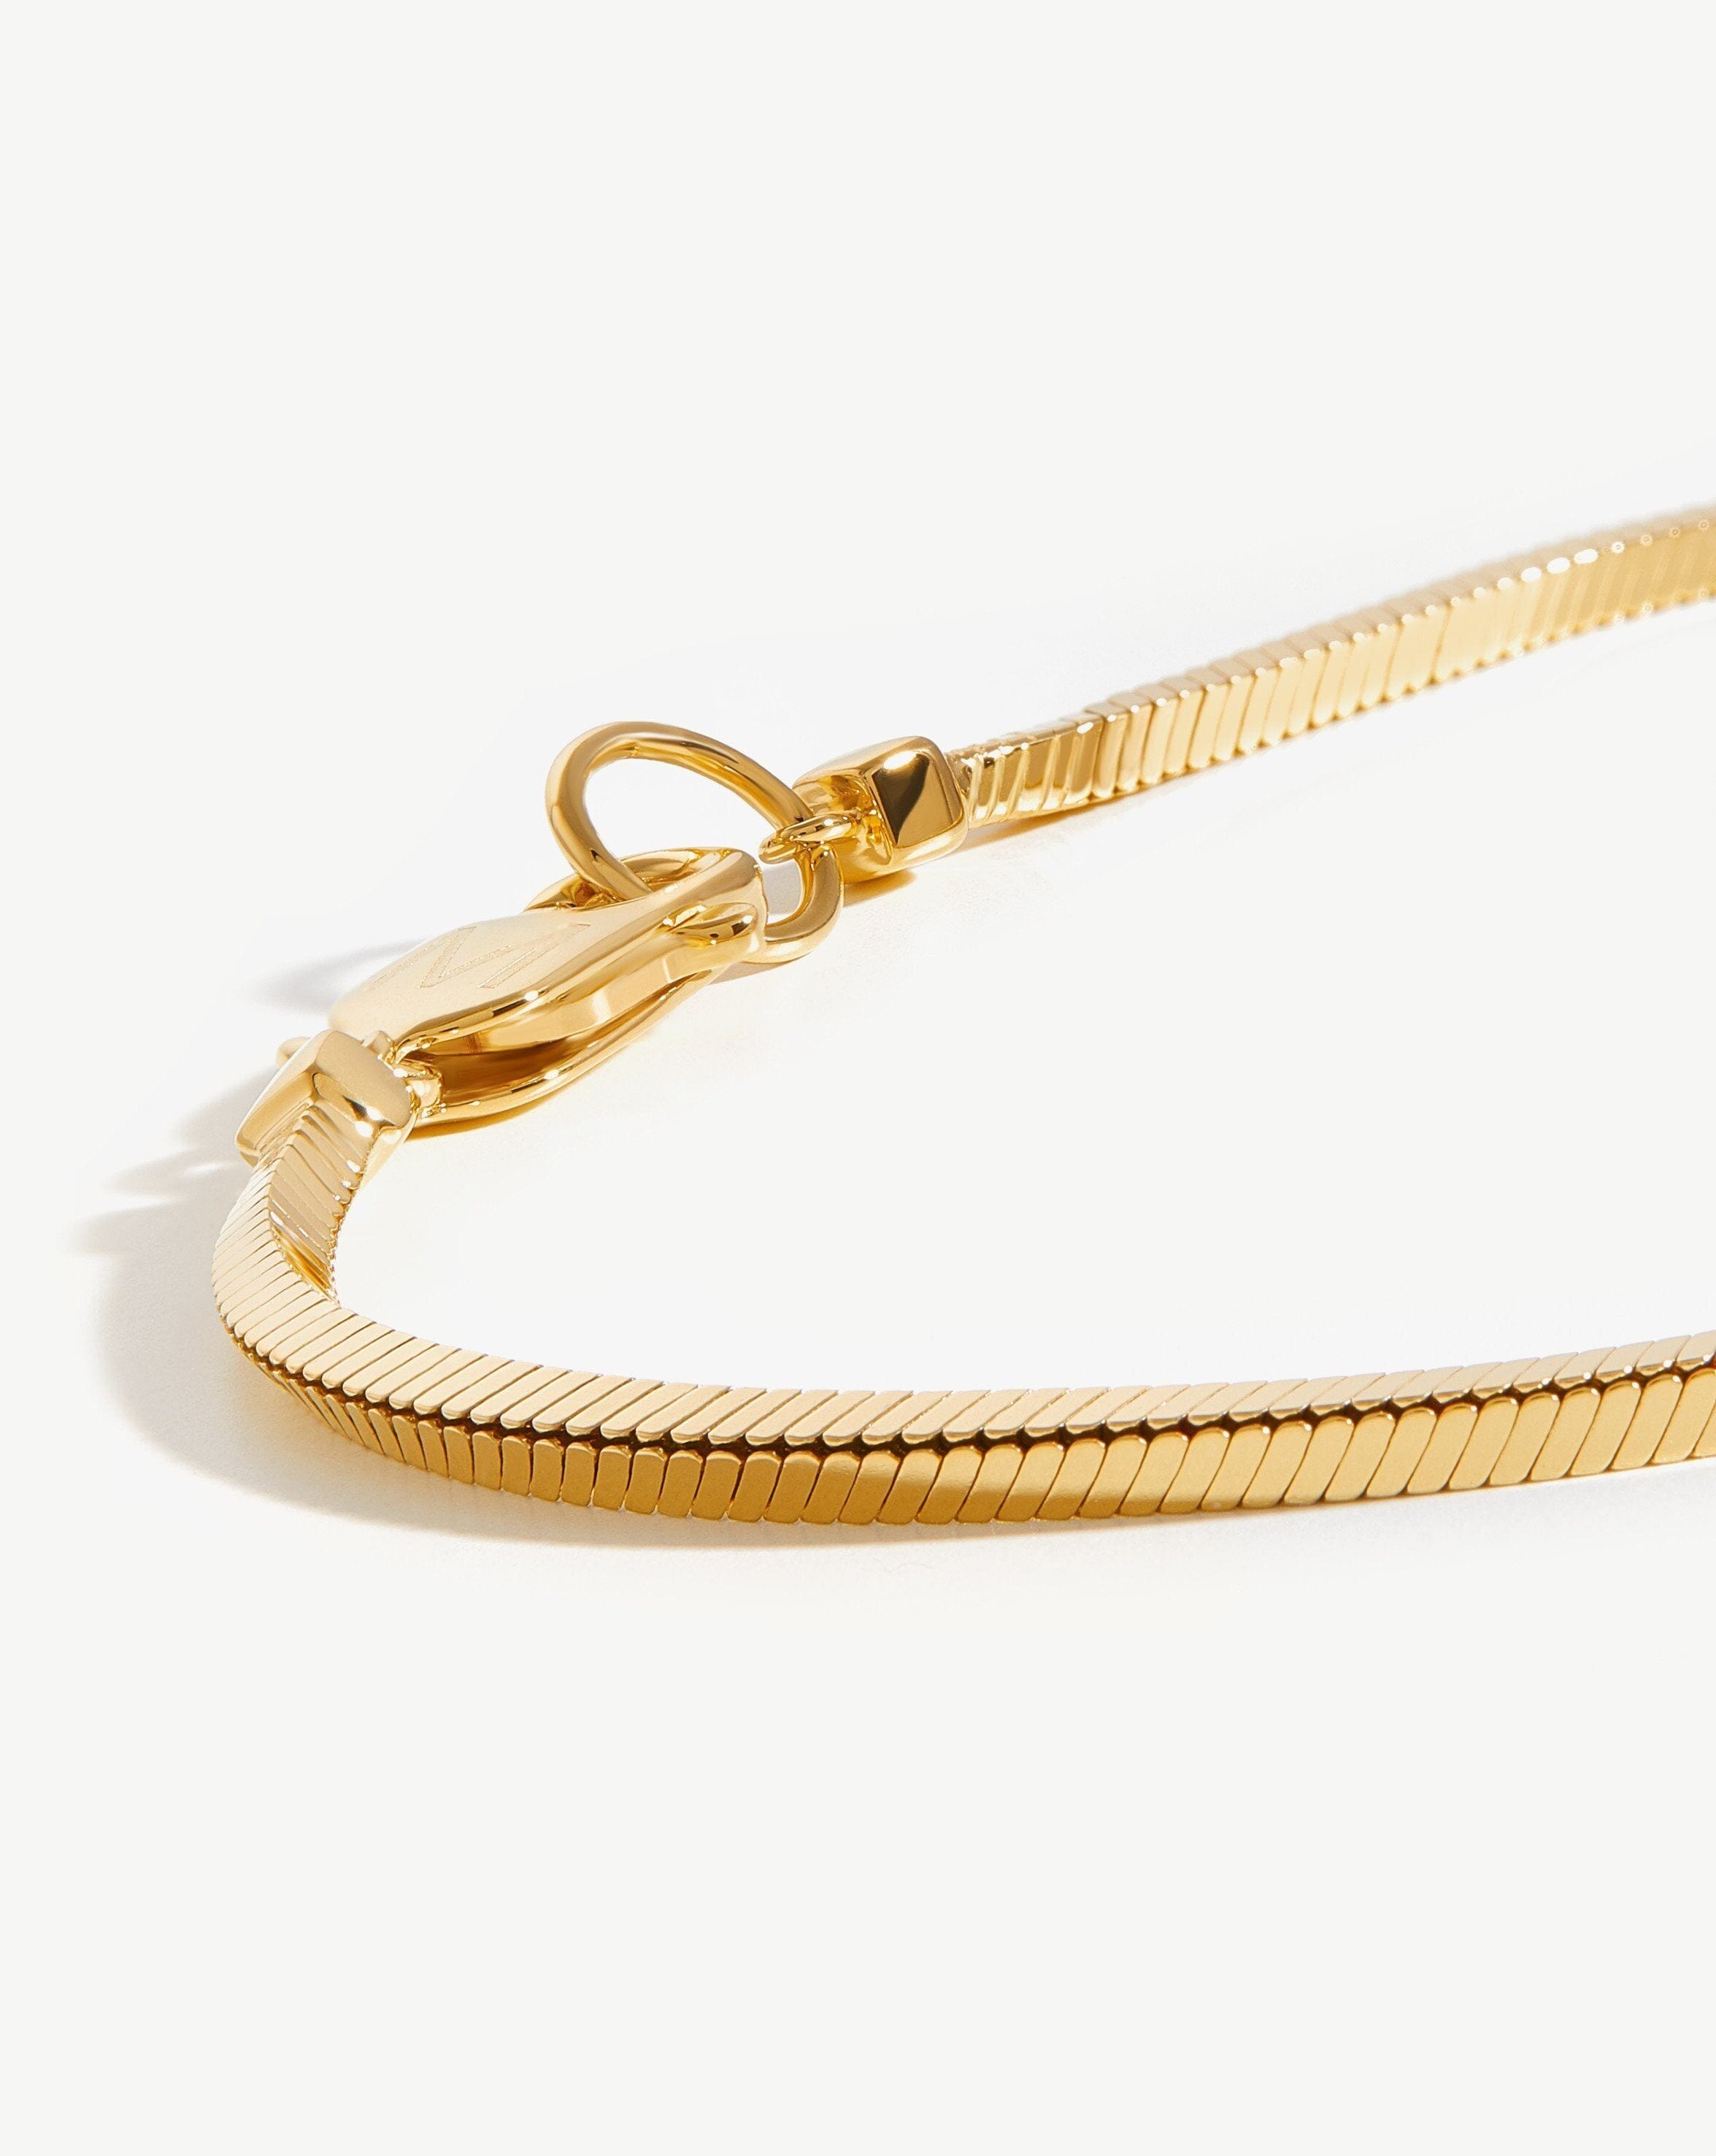 Brass Double Snake Men Bracelet Jewelry Gift